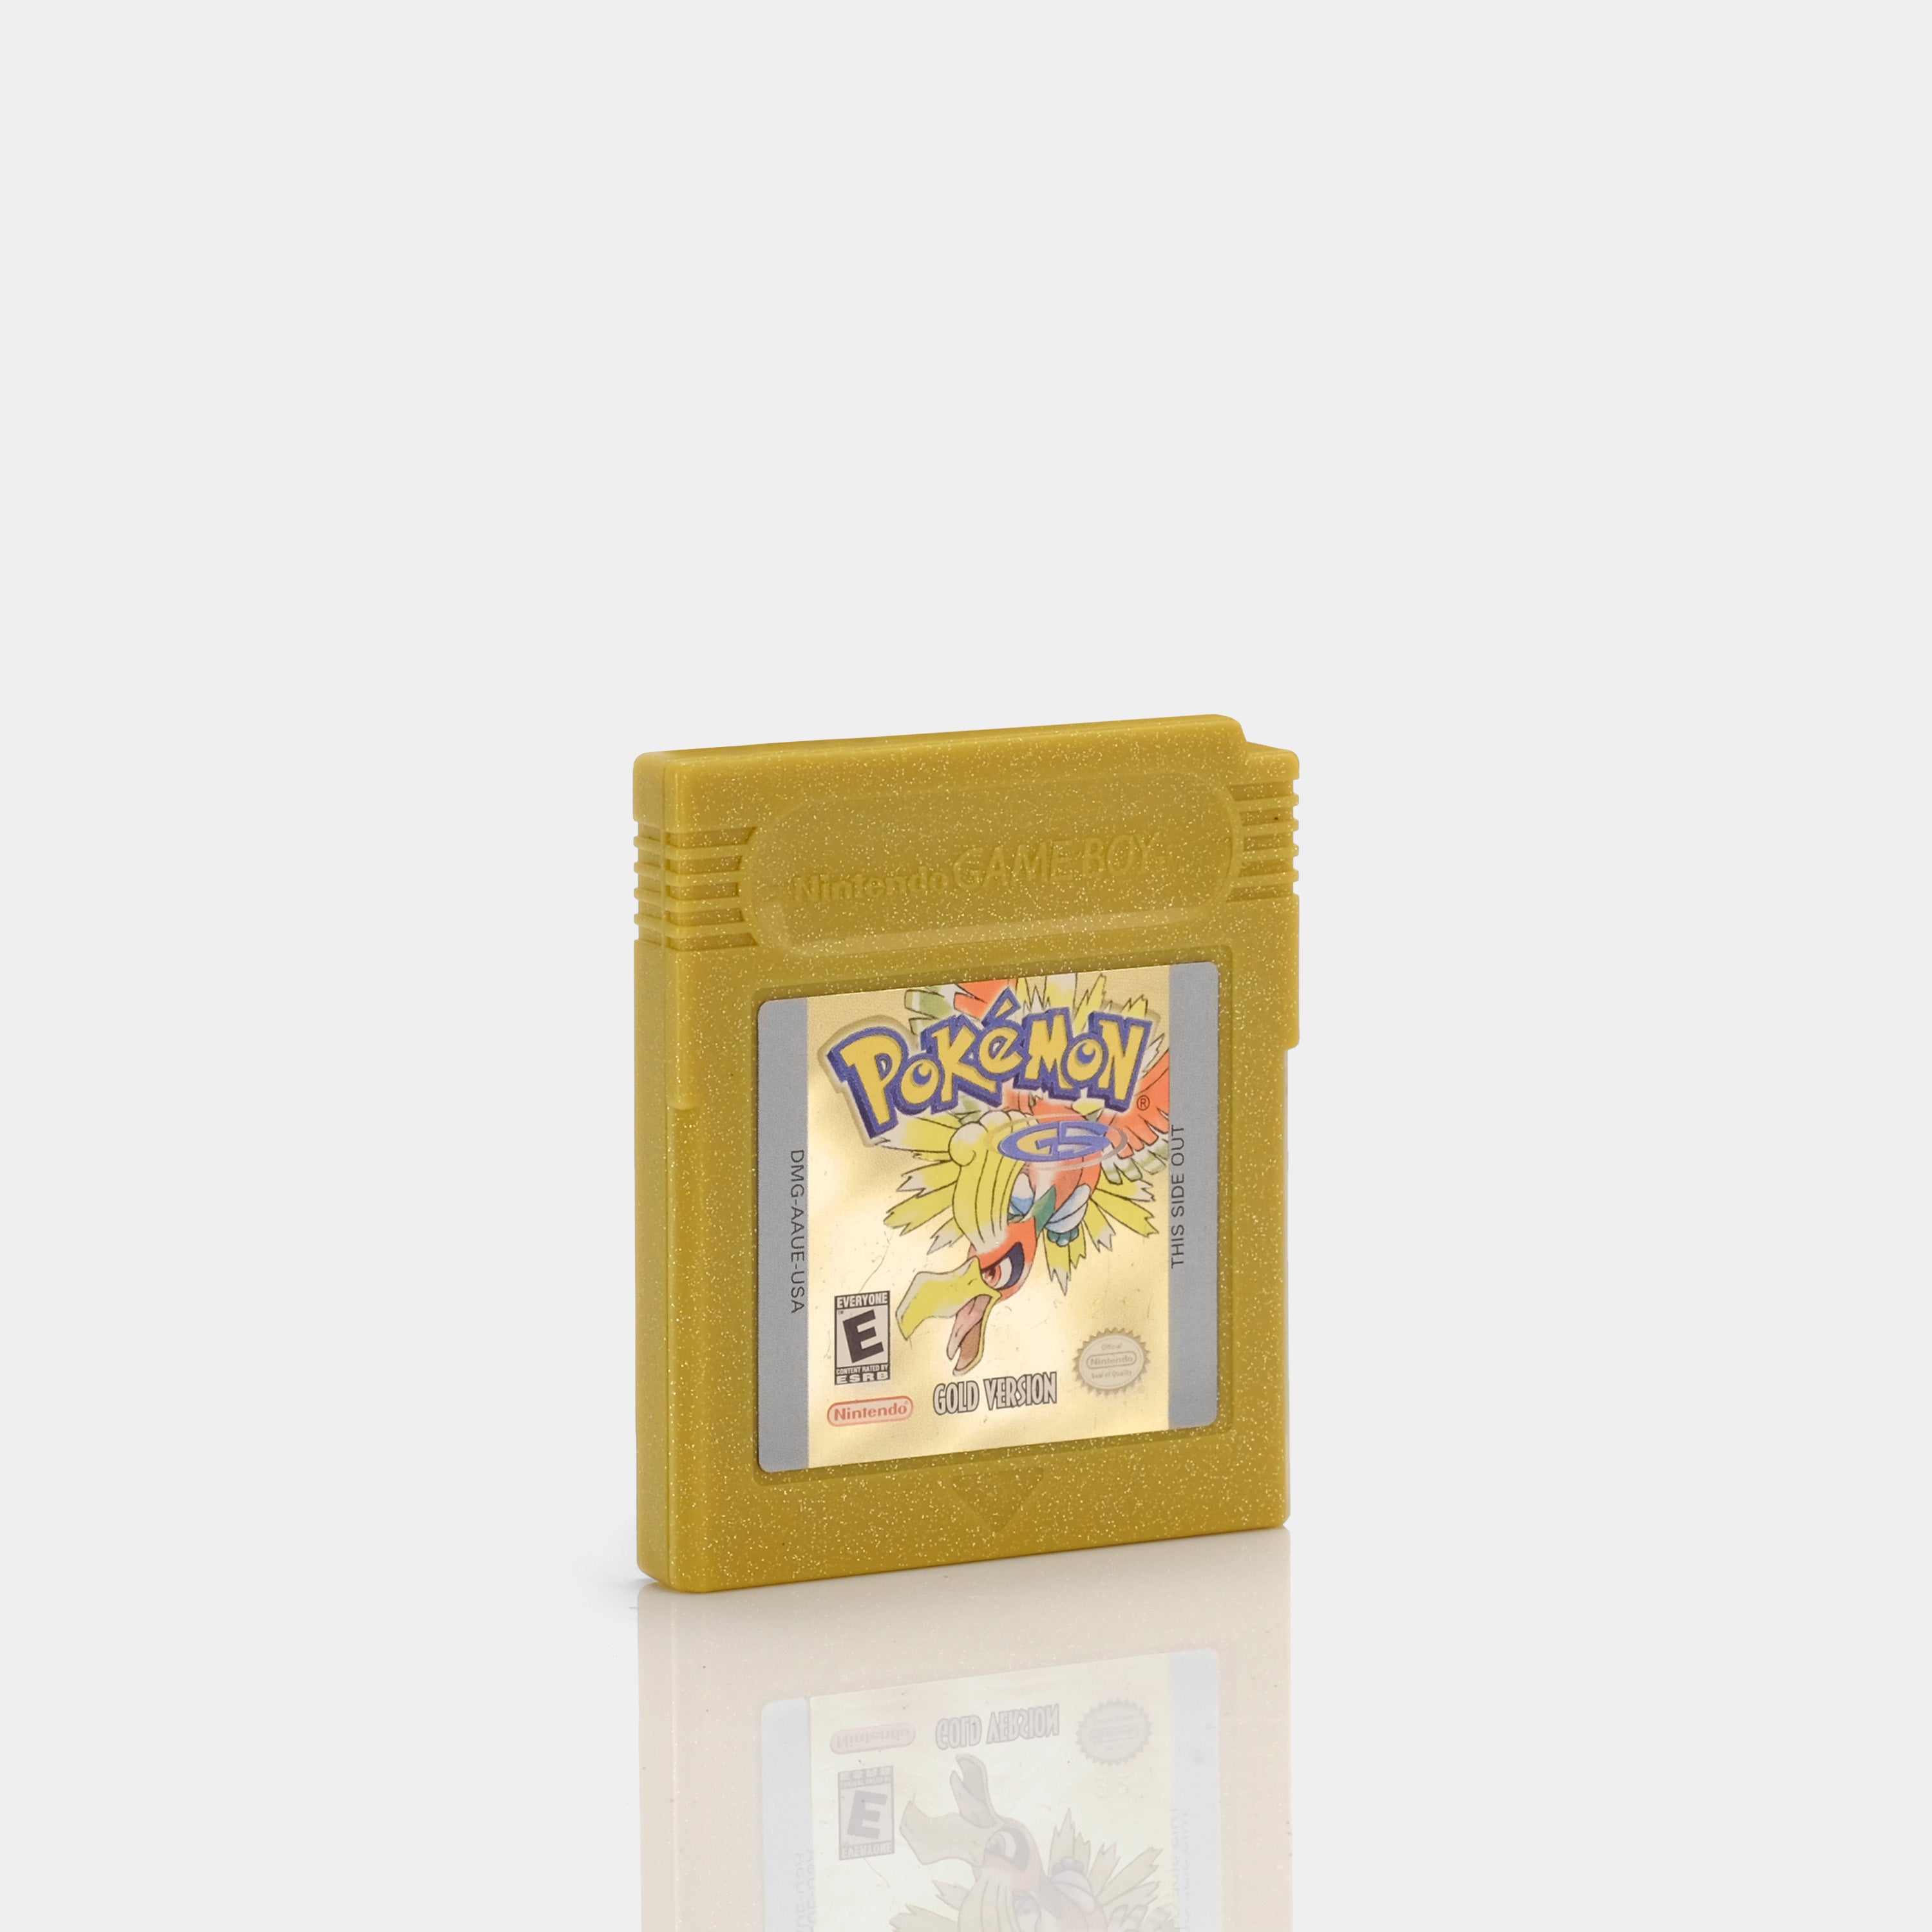 Pokémon Gold Game Boy Color Game